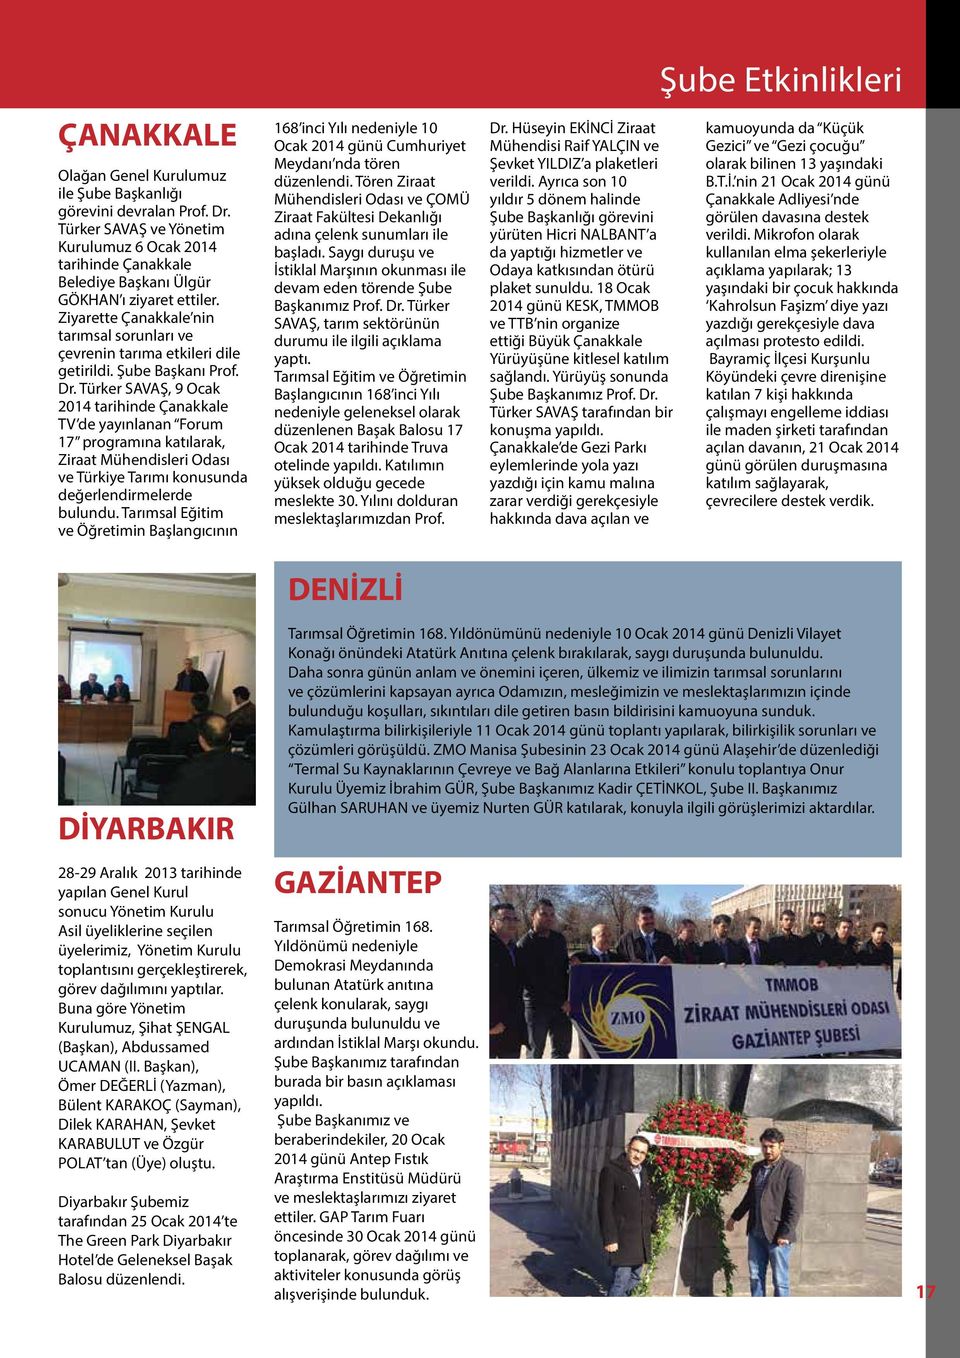 Türker SAVAŞ, 9 Ocak 2014 tarihinde Çanakkale TV de yayınlanan Forum 17 programına katılarak, Ziraat Mühendisleri Odası ve Türkiye Tarımı konusunda değerlendirmelerde bulundu.